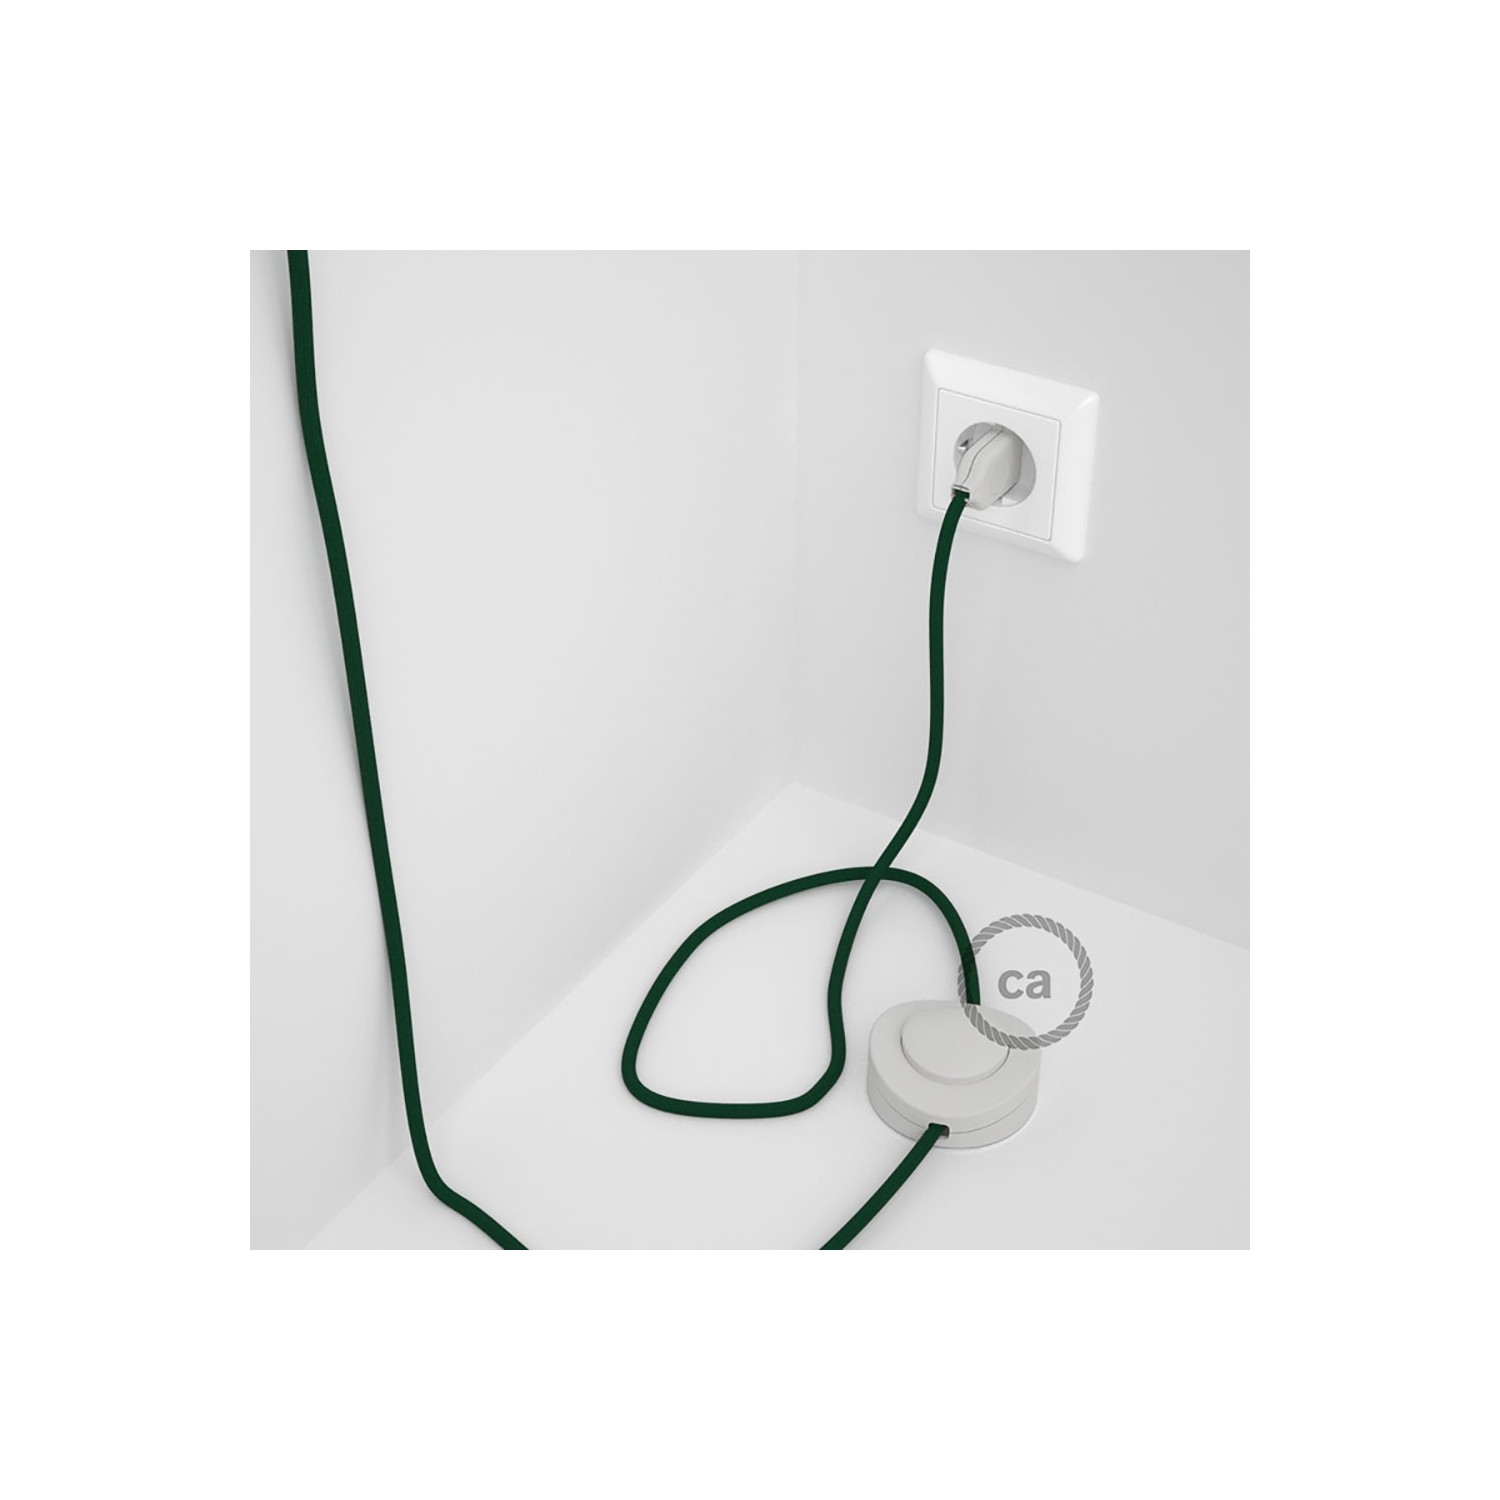 Cordon pour lampadaire, câble RM21 Effet Soie Vert Foncé 3 m. Choisissez la couleur de la fiche et de l'interrupteur!